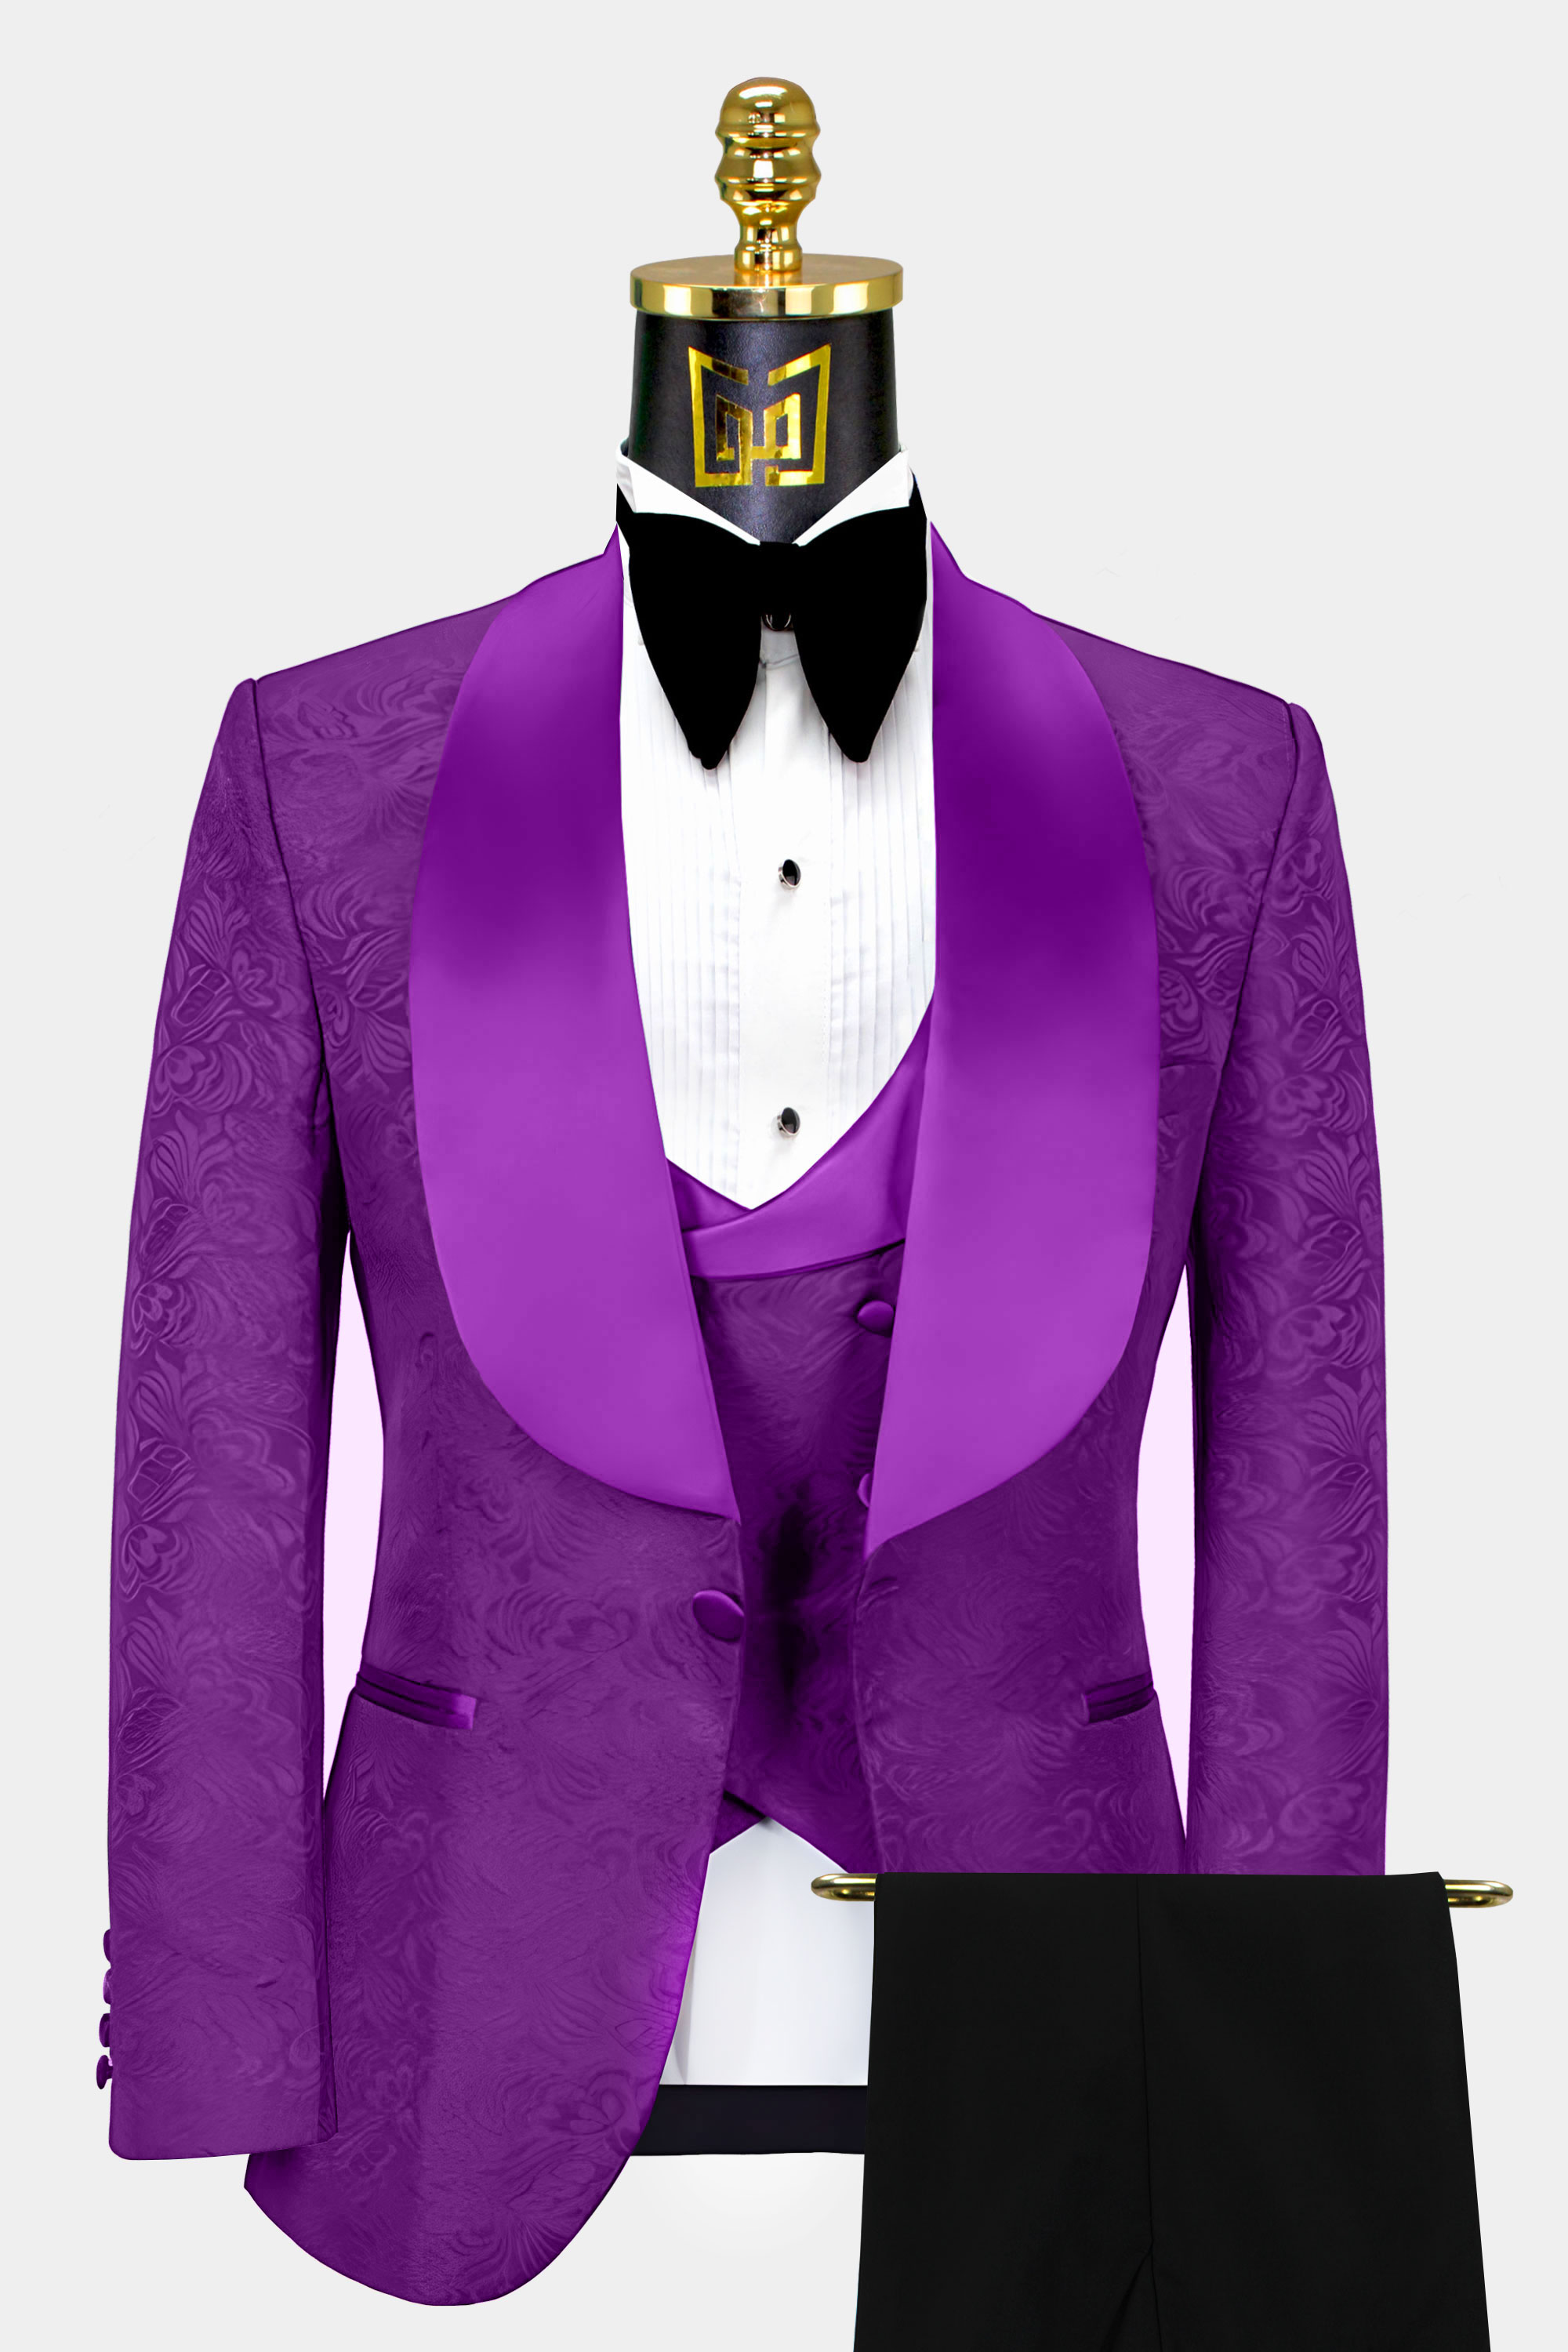 Violet-Purple-and-Black-Tuxedo-Groom-Wedding-Suit-from-Gentlemansguru.com